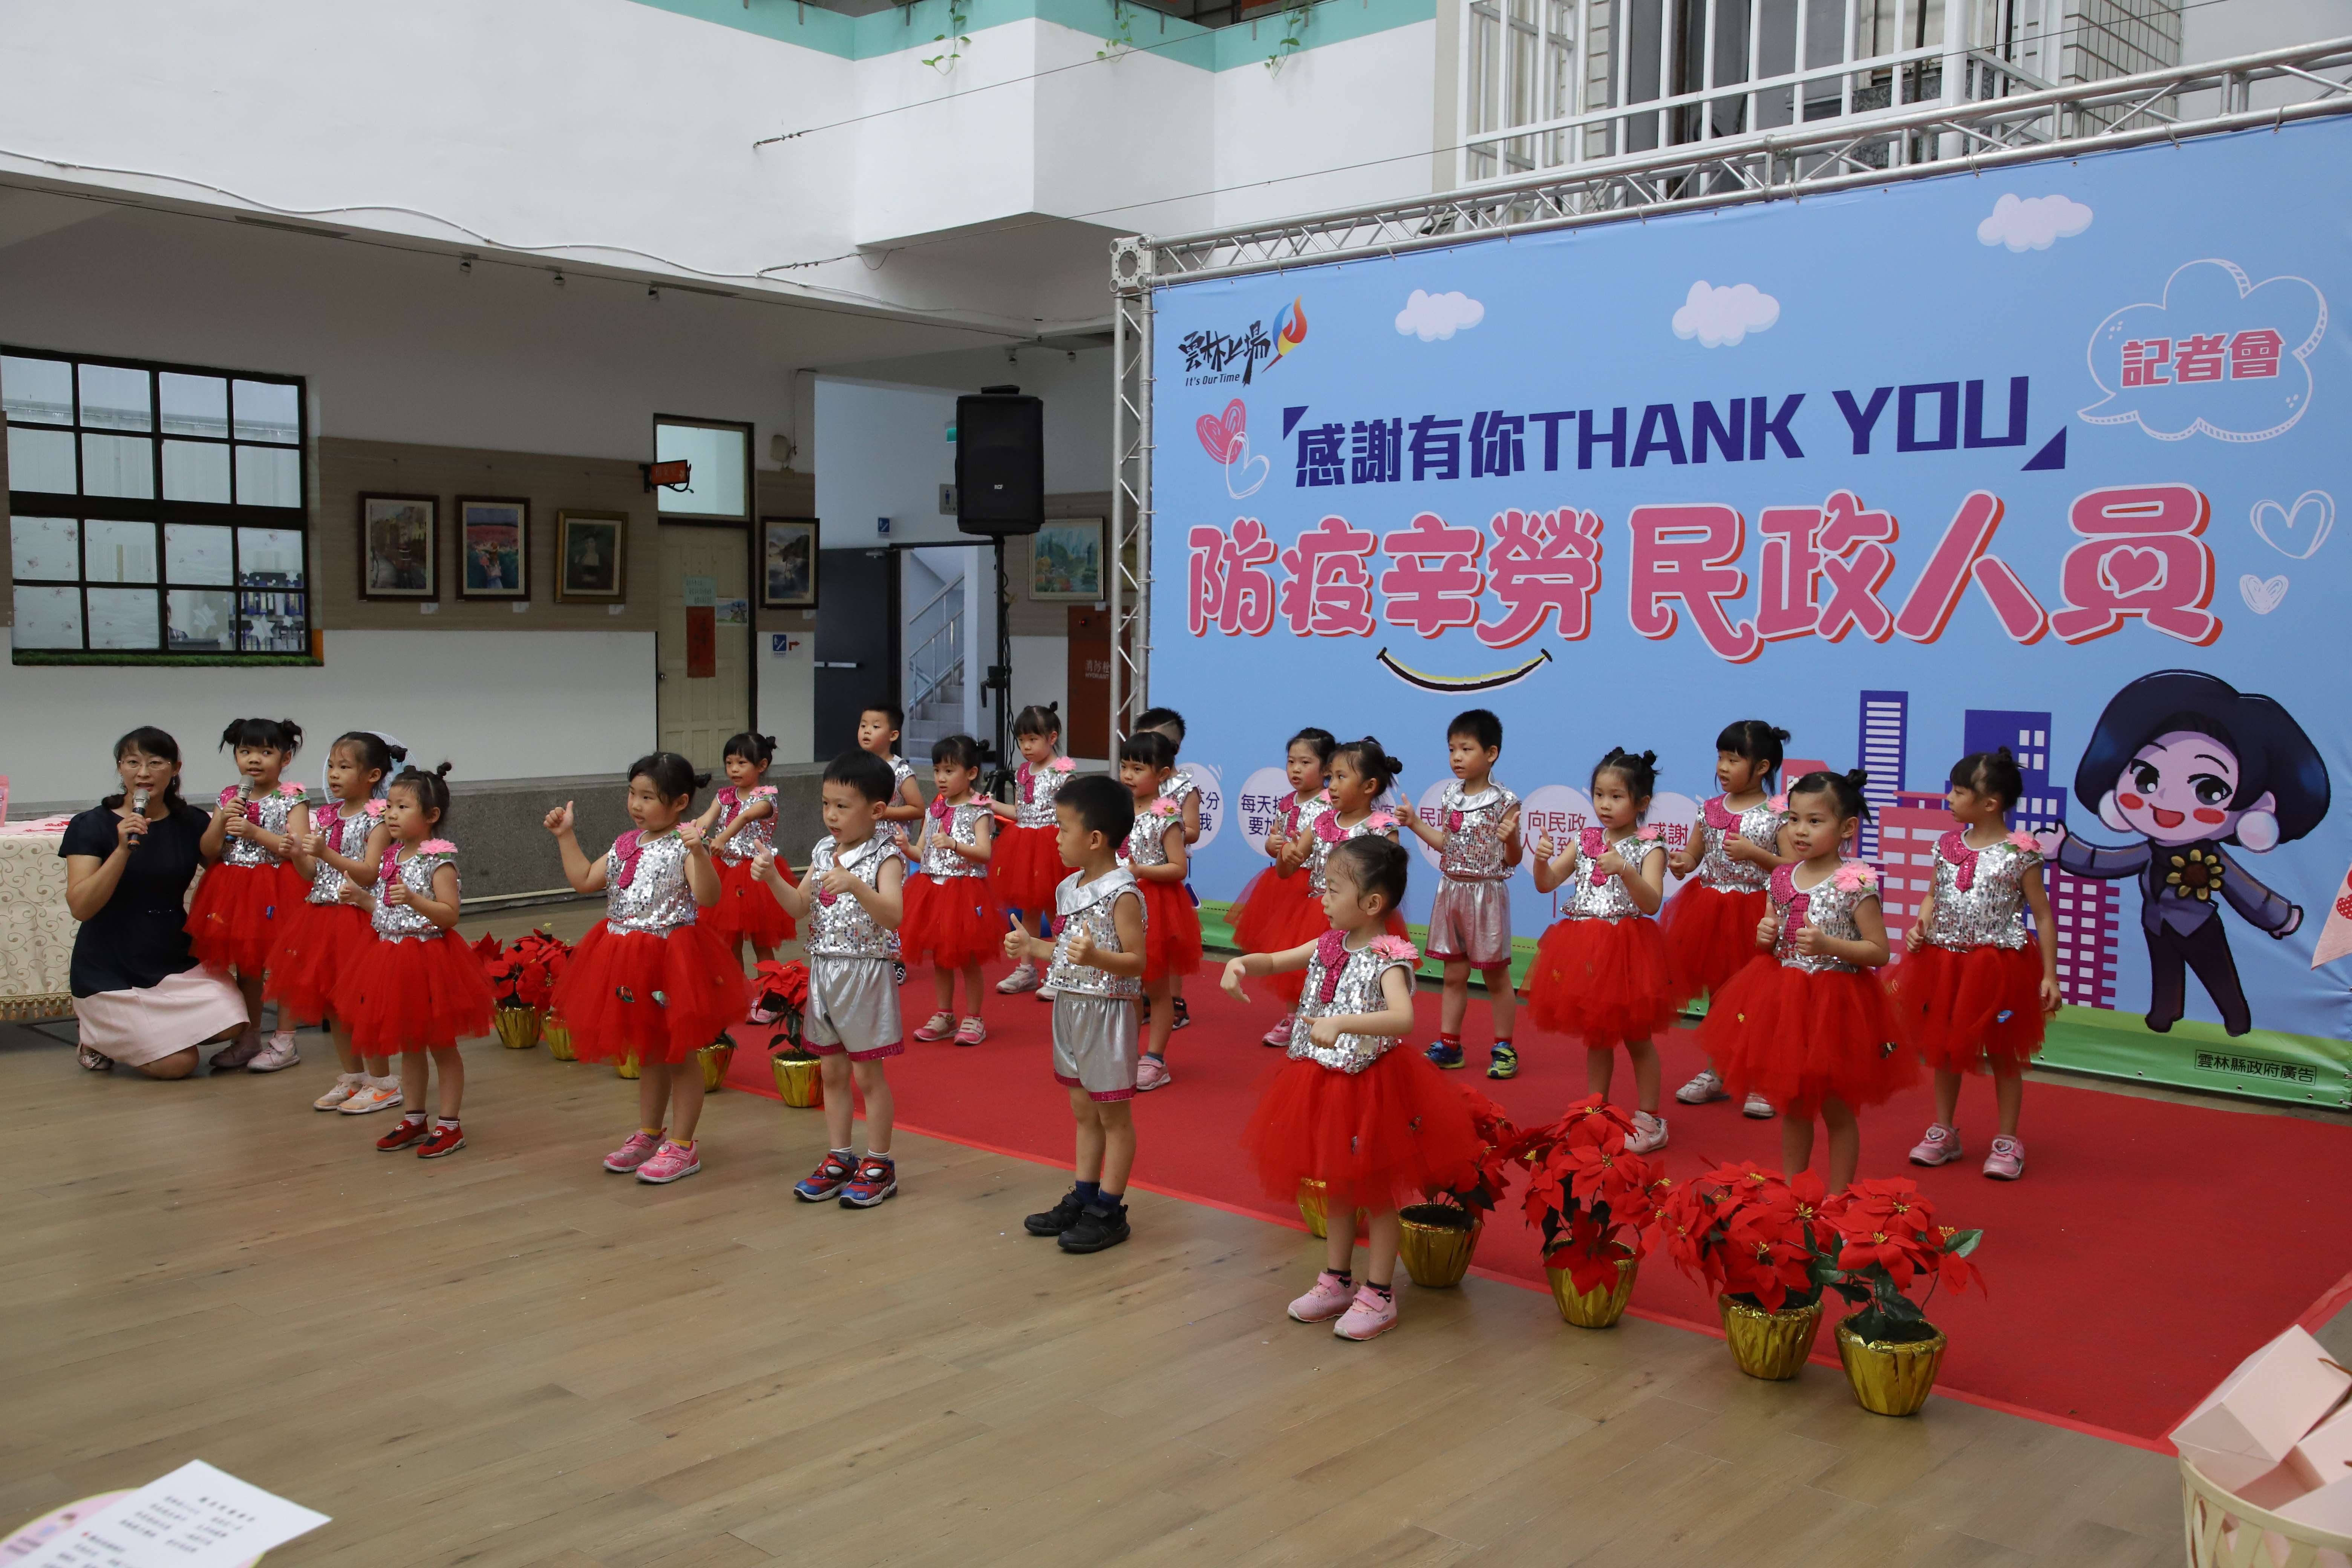 斗六市立幼兒園幼童以舞蹈向民政人員表達感謝。